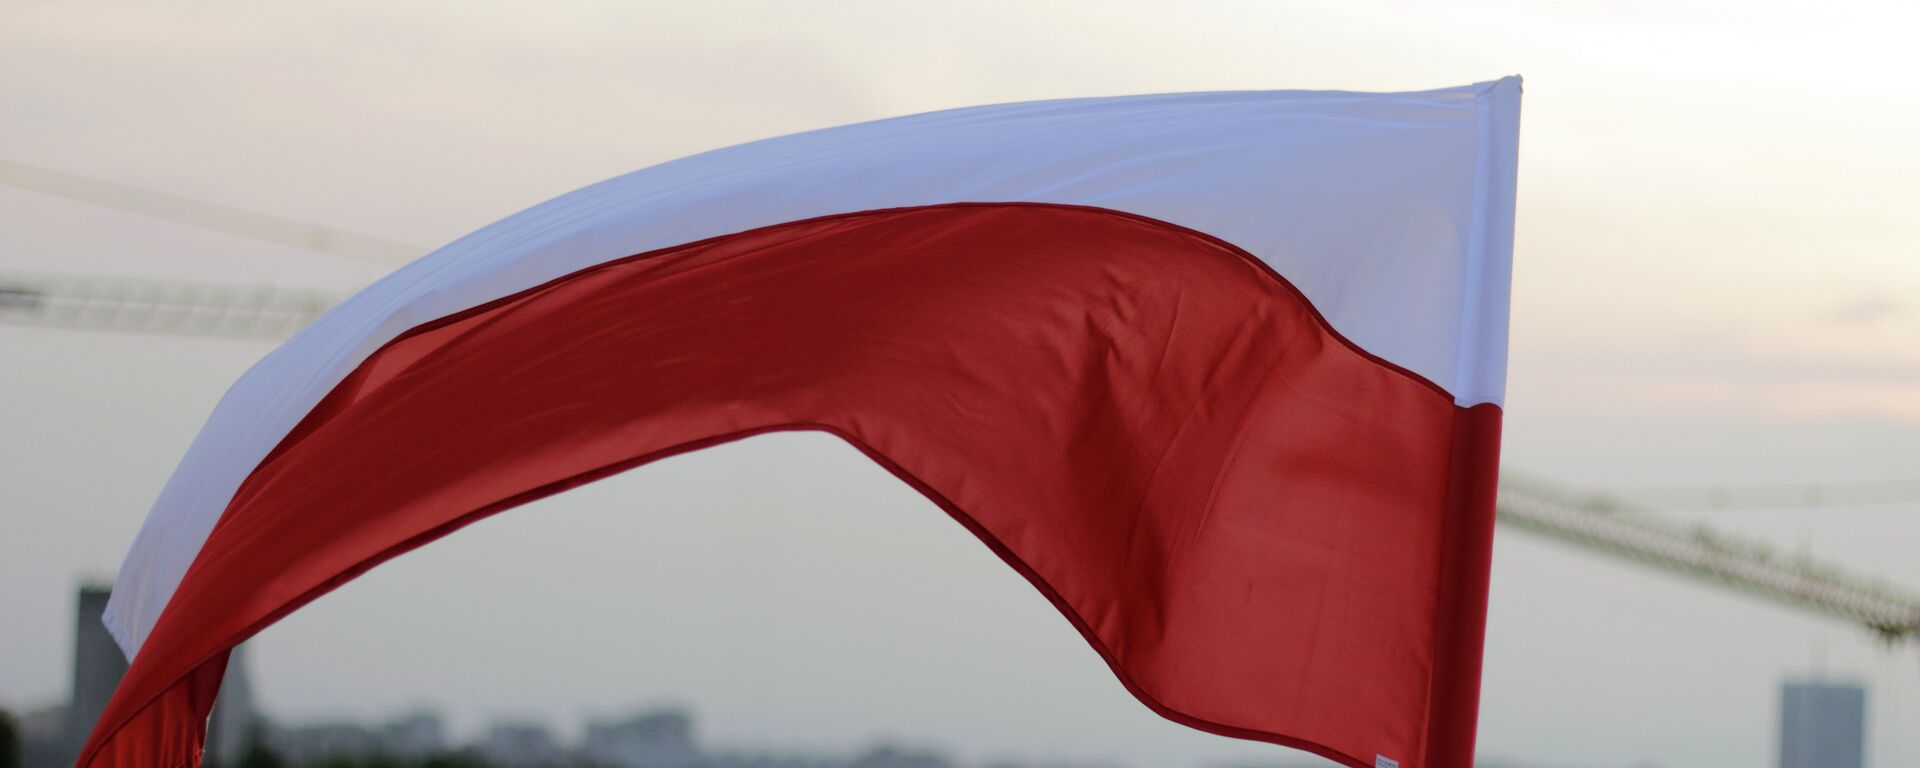 Bandera de Polonia - Sputnik Mundo, 1920, 14.01.2021